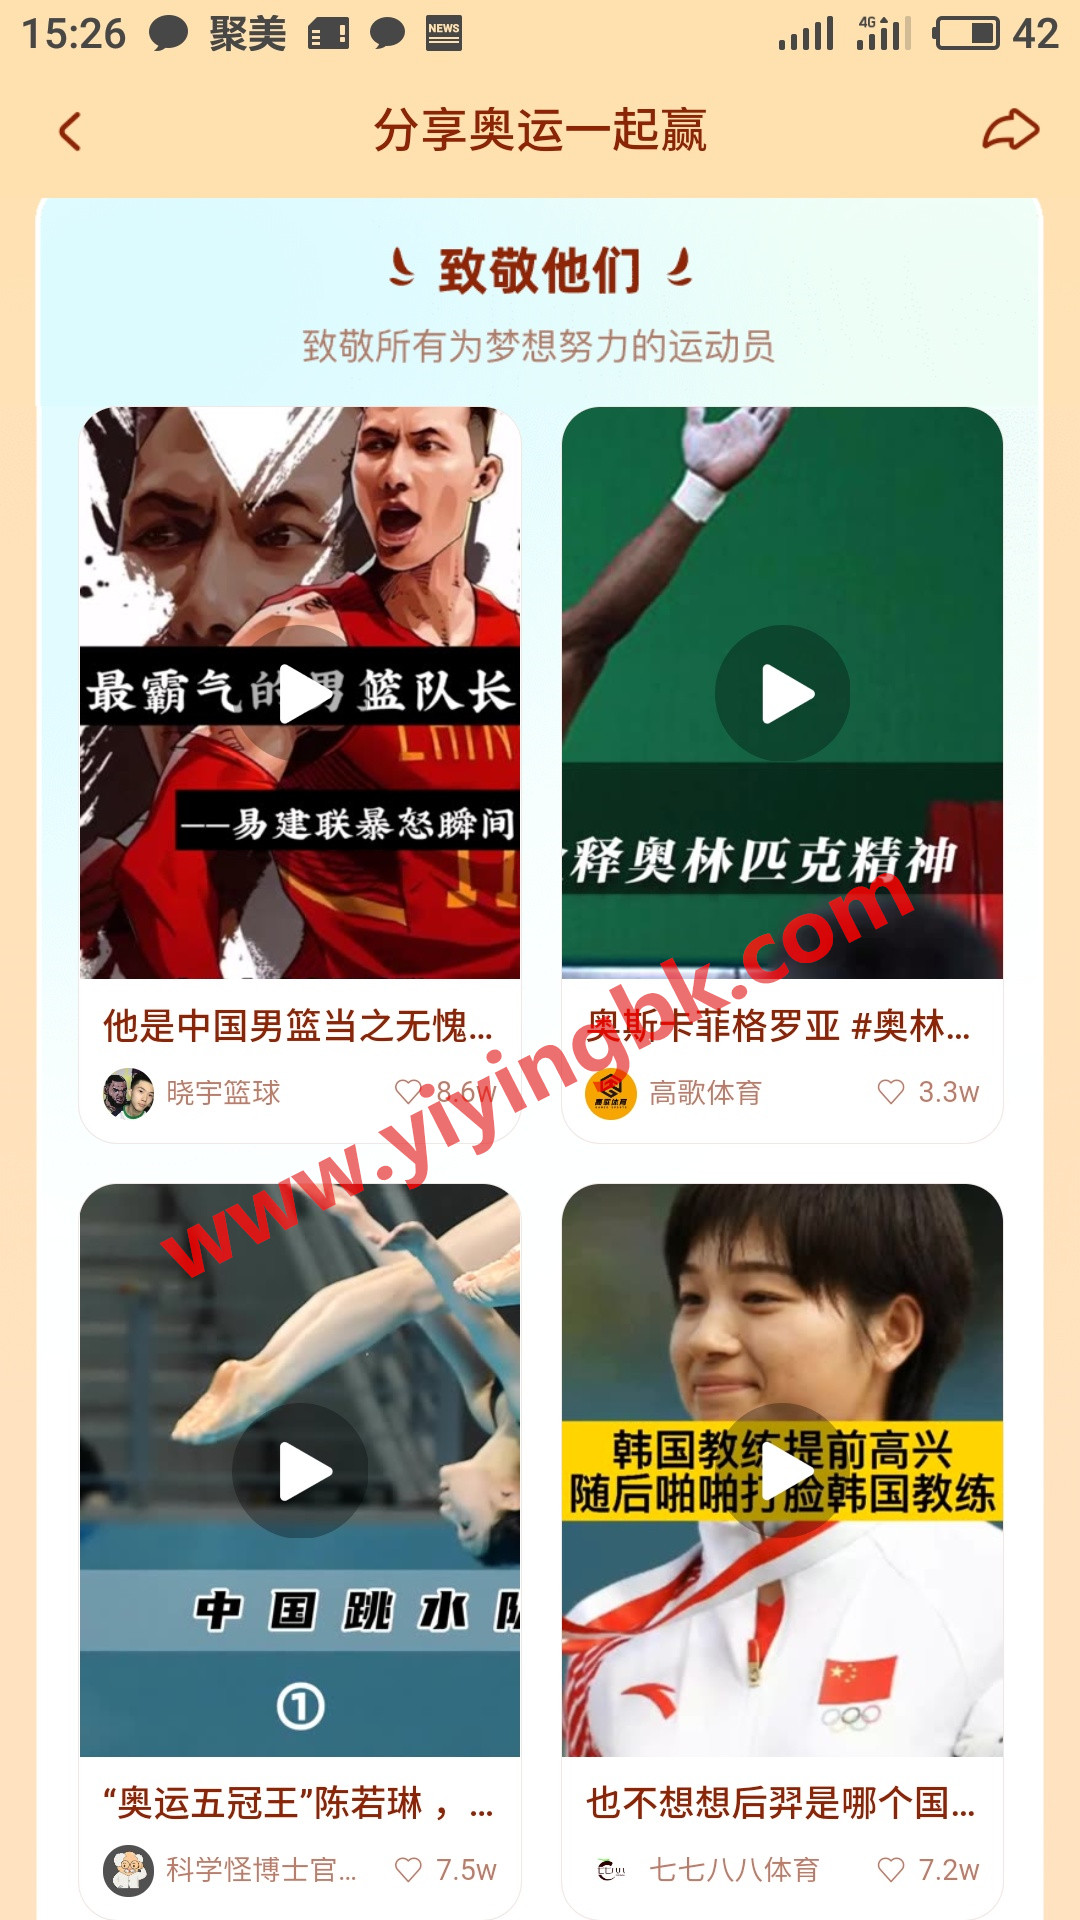 分享奥运视频一起赢红包，www.yiyingbk.com